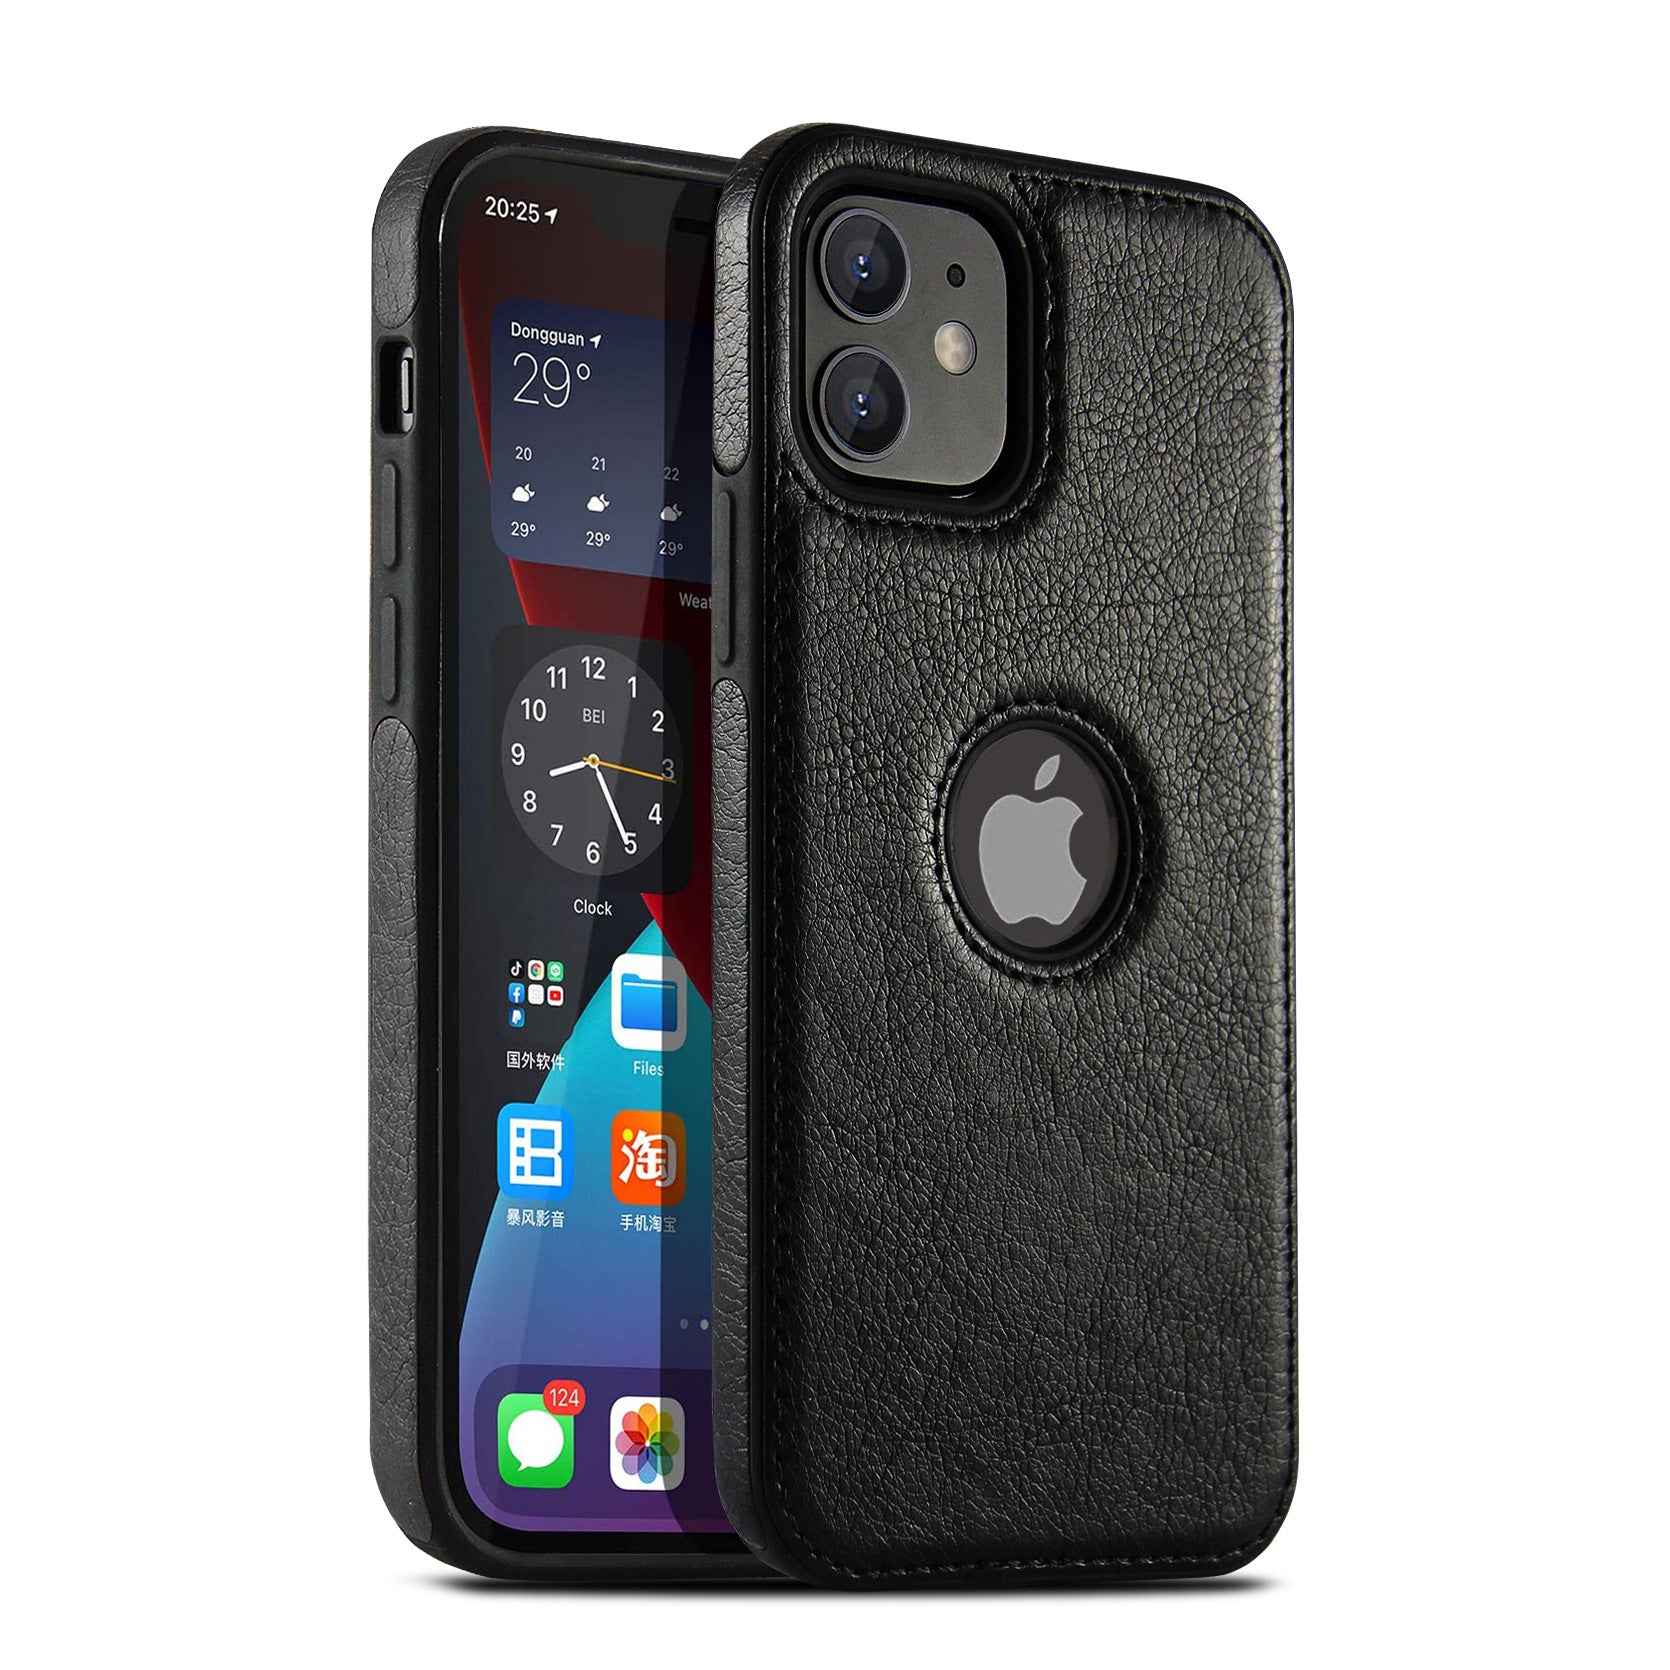 Vegan Leather Black iPhone Case